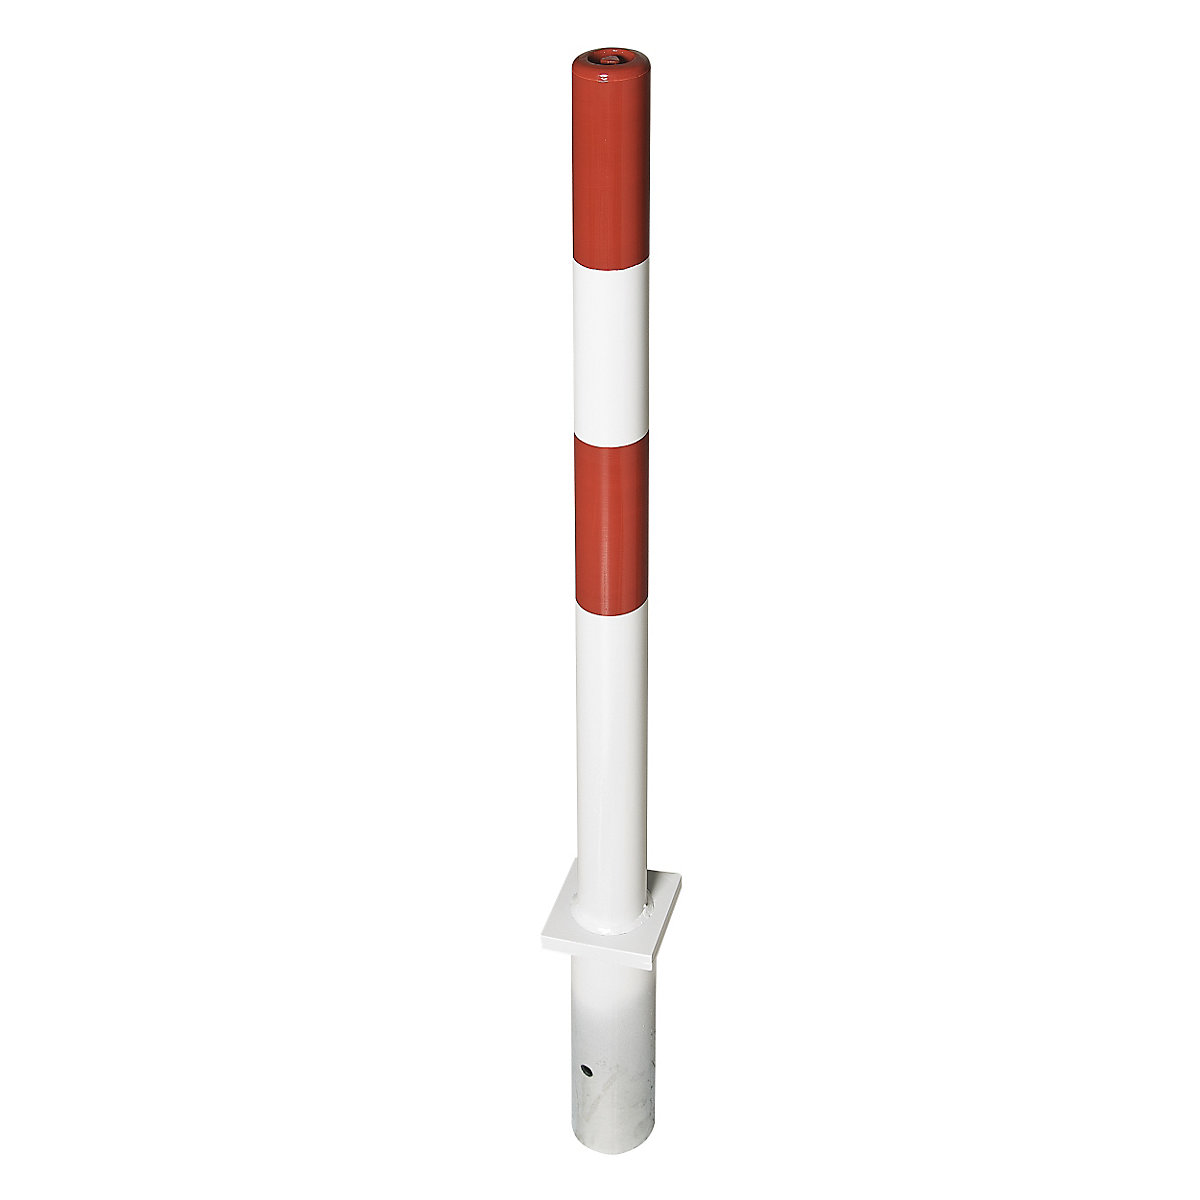 Stâlp de blocare din țeavă tubulară de oțel, roșu / alb, pentru betonare, Ø 76 mm, cu broască triunghiulară